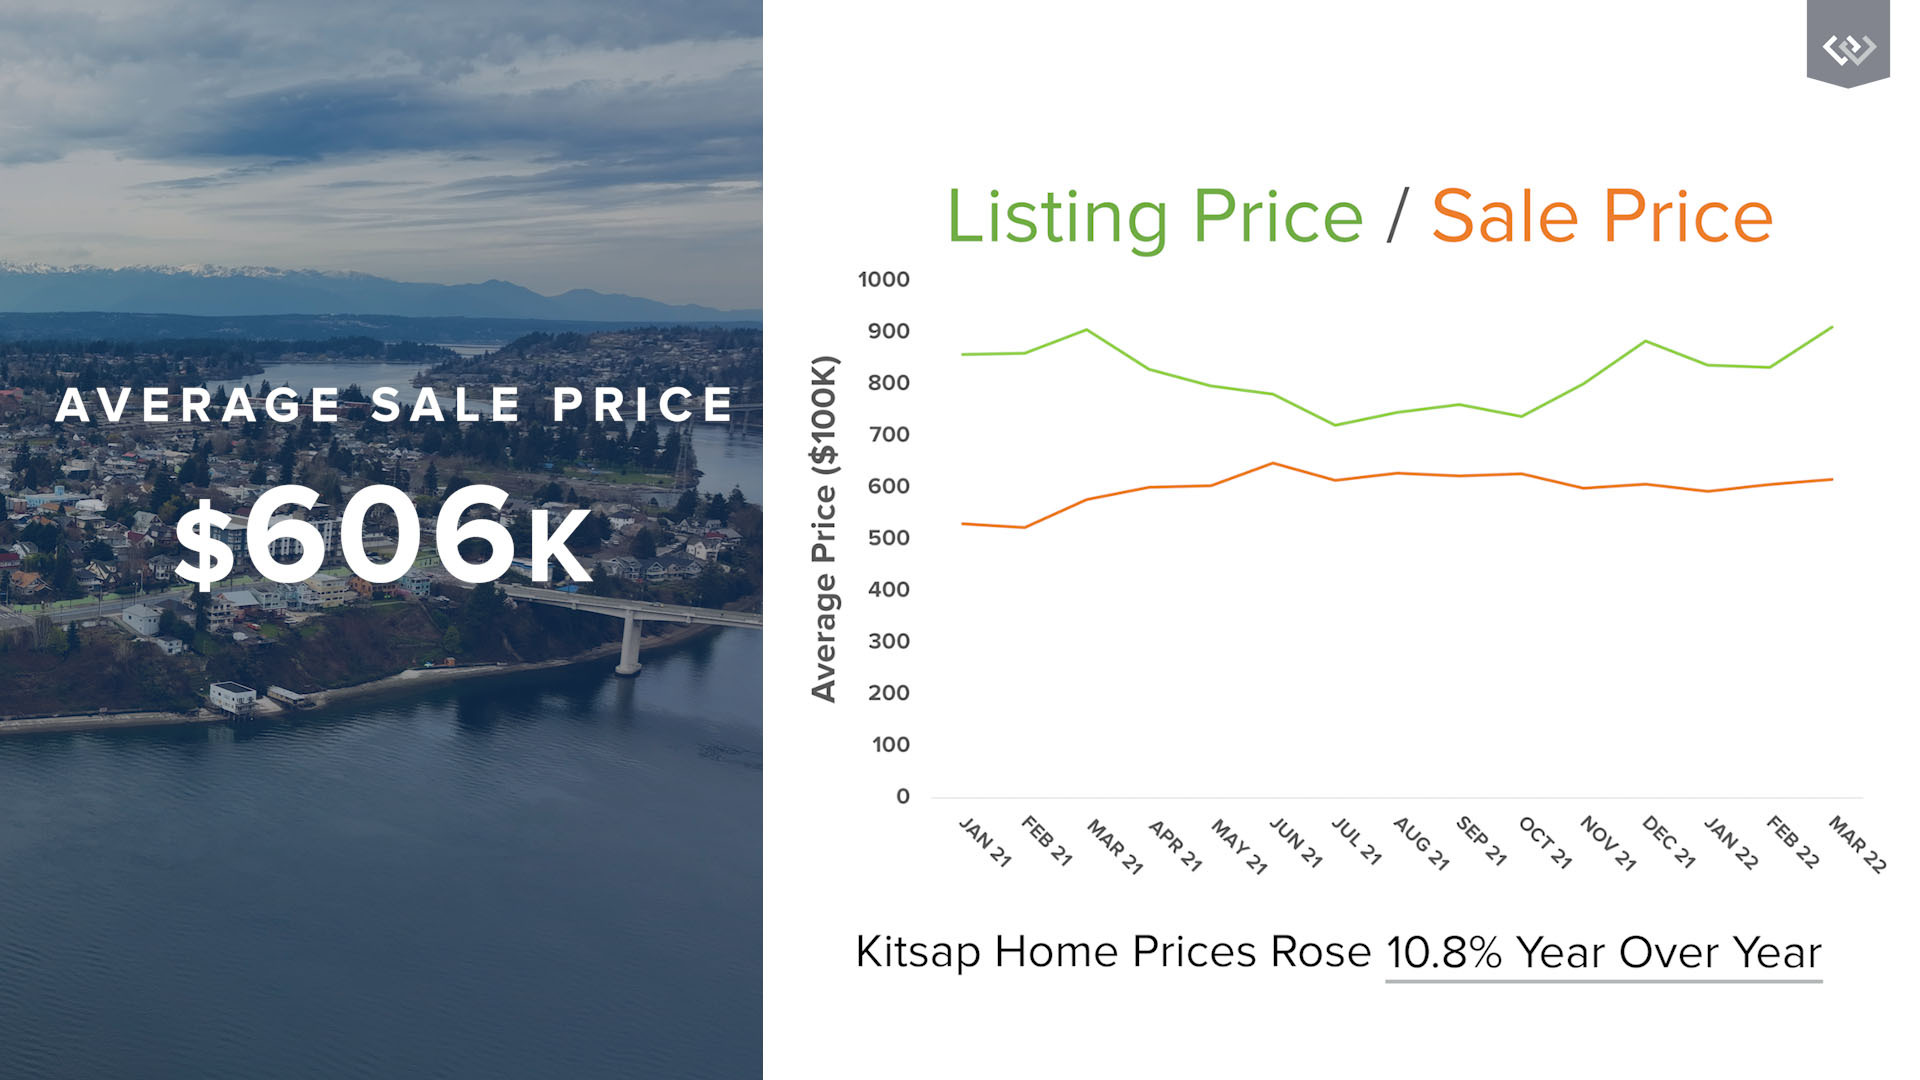 listing-price-graph-kitsap-market